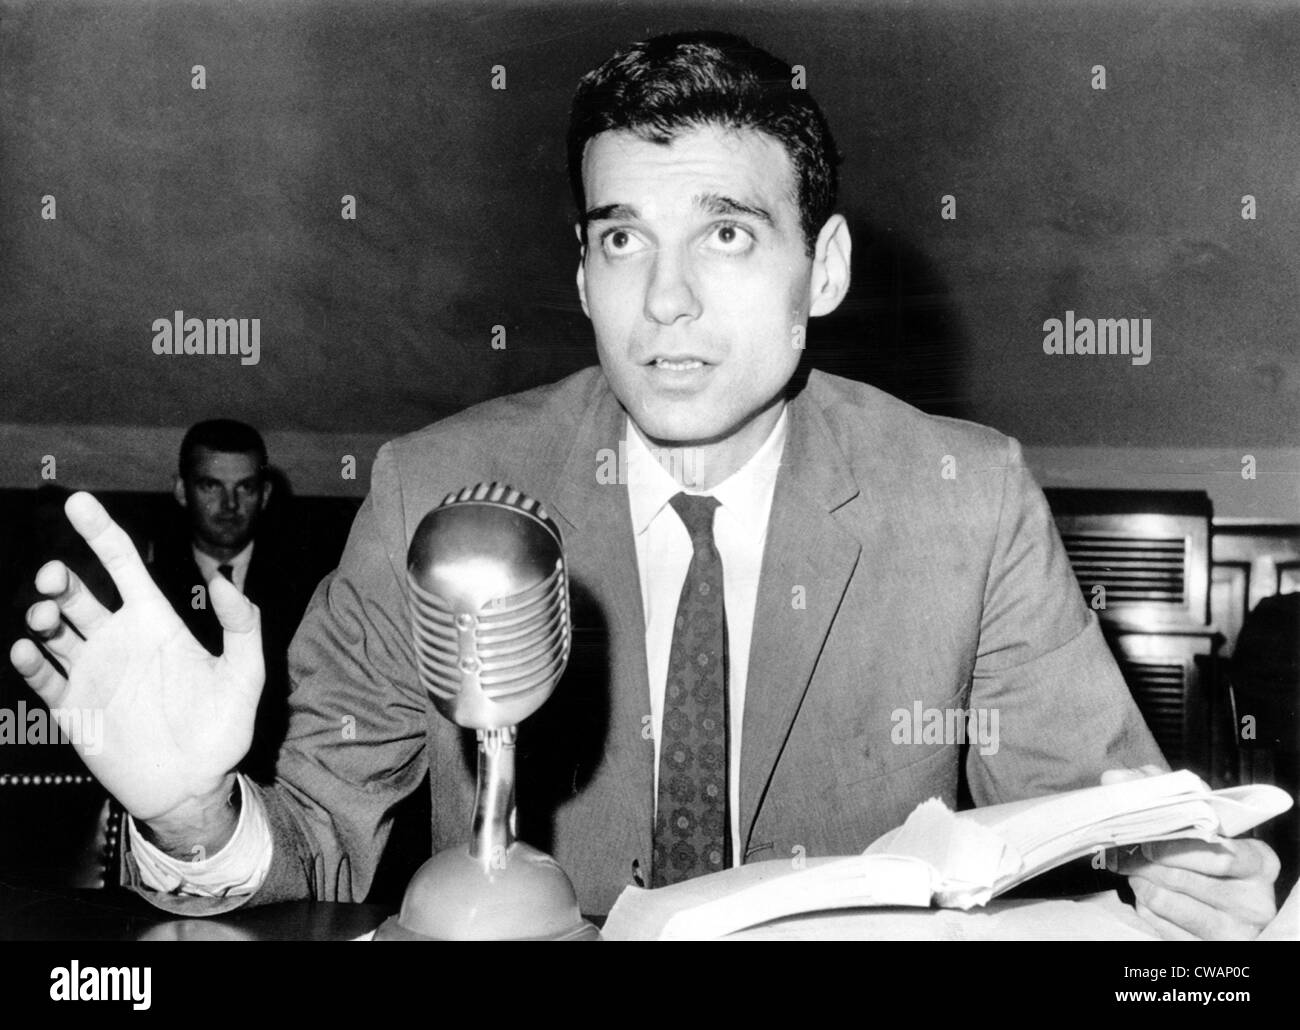 Ralph Nader testificar ante el Comité de Comercio del Congreso acerca de la seguridad de la Rolls Royce, coches, 5/4/1966. Archivos CSU/Everett Foto de stock